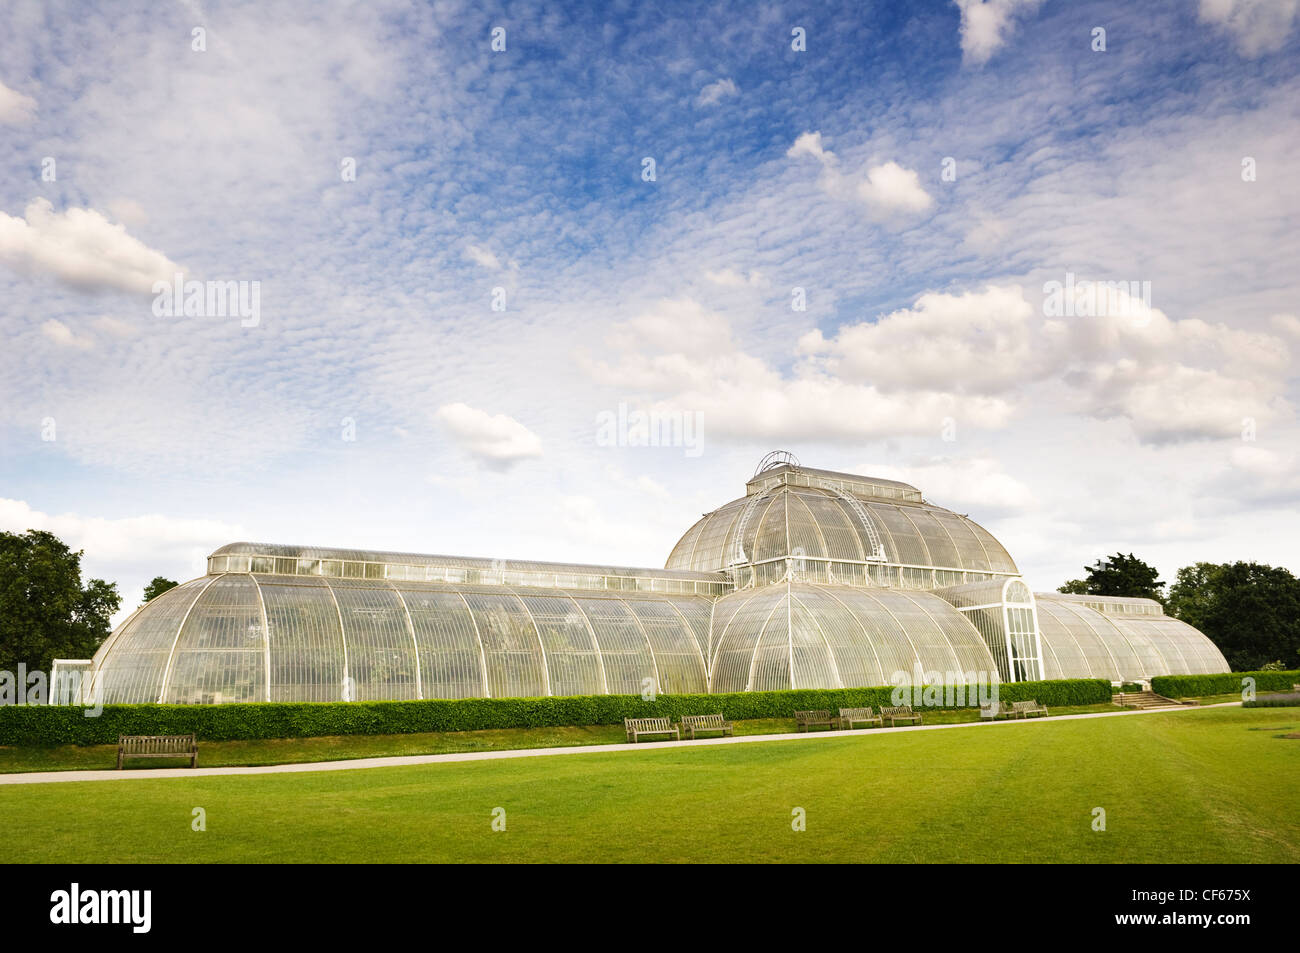 L'arrière de la Palm House, la colonie la plus importante structure de verre et de fer de l'époque victorienne dans le monde, à Kew Gardens. Banque D'Images